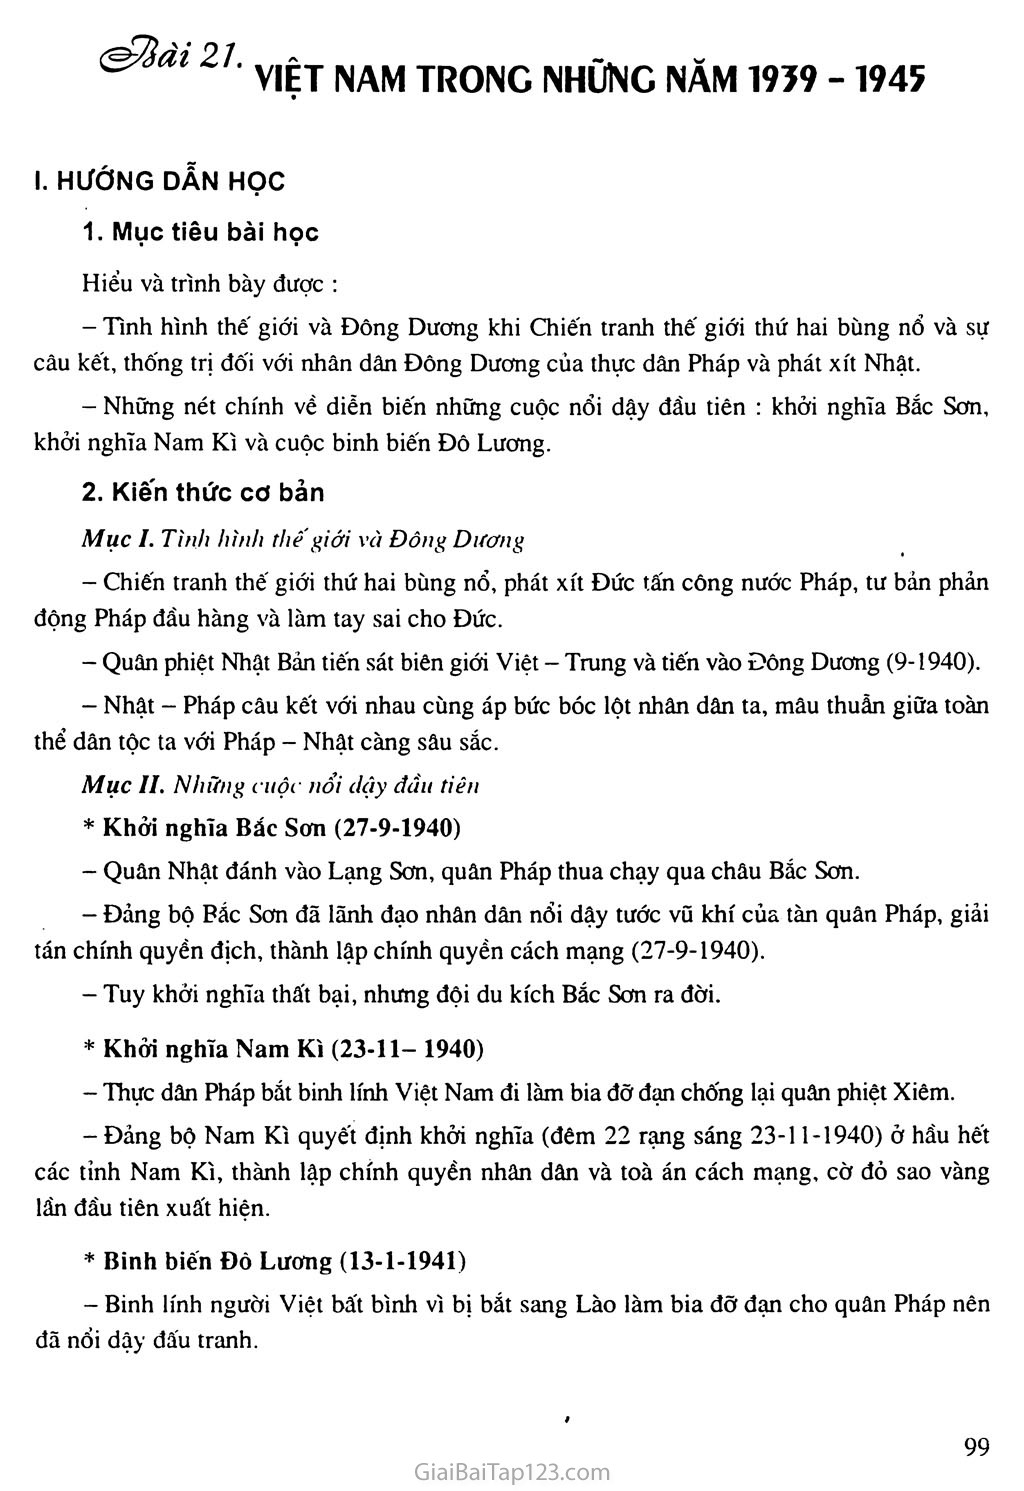 Bài 21: Việt Nam trong những năm 1939 - 1945 trang 1